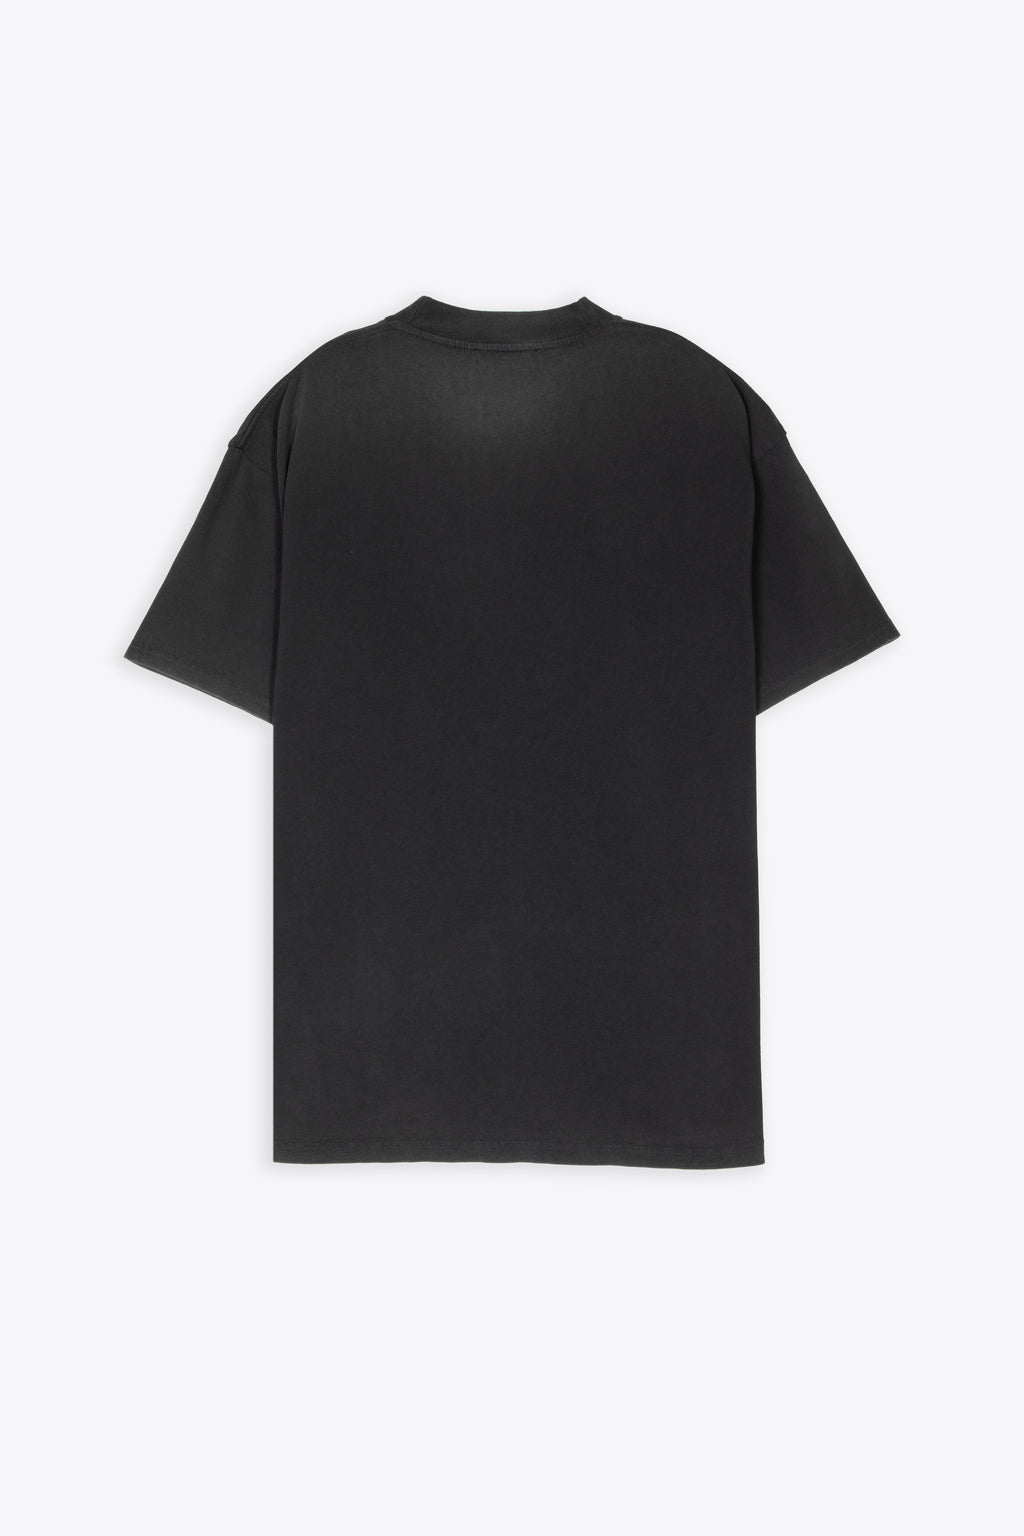 alt-image__T-shirt-in-cotone-nero-lavato-con-stampa-grafica---Horoughbred-T-shirt